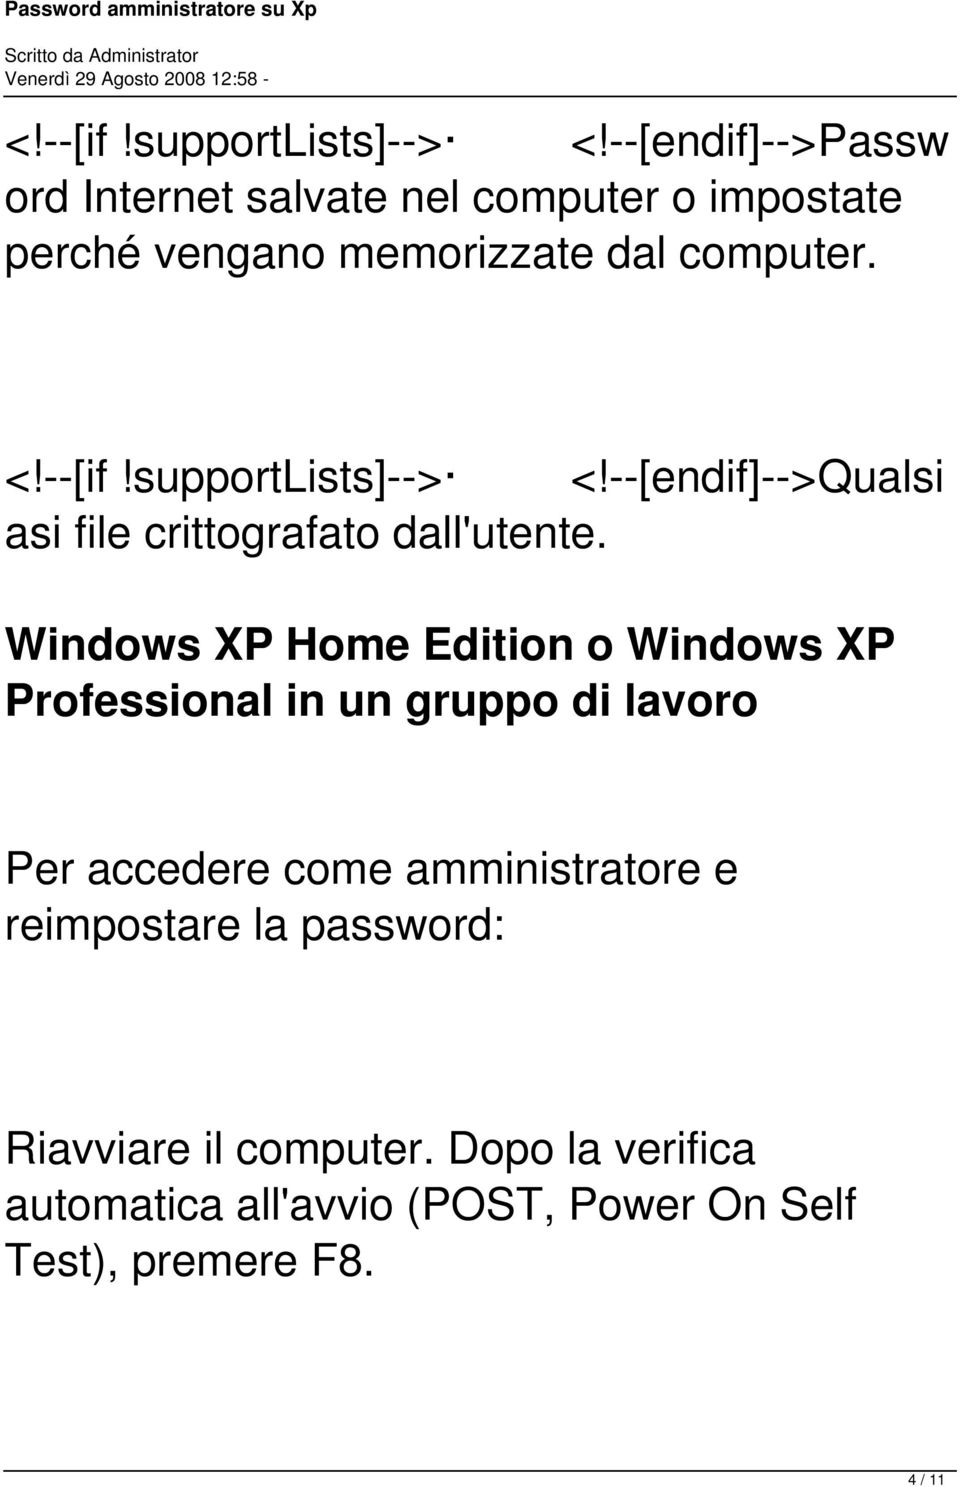 --[endif]-->qualsi asi file crittografato dall'utente Windows XP Home Edition o Windows XP Professional in un